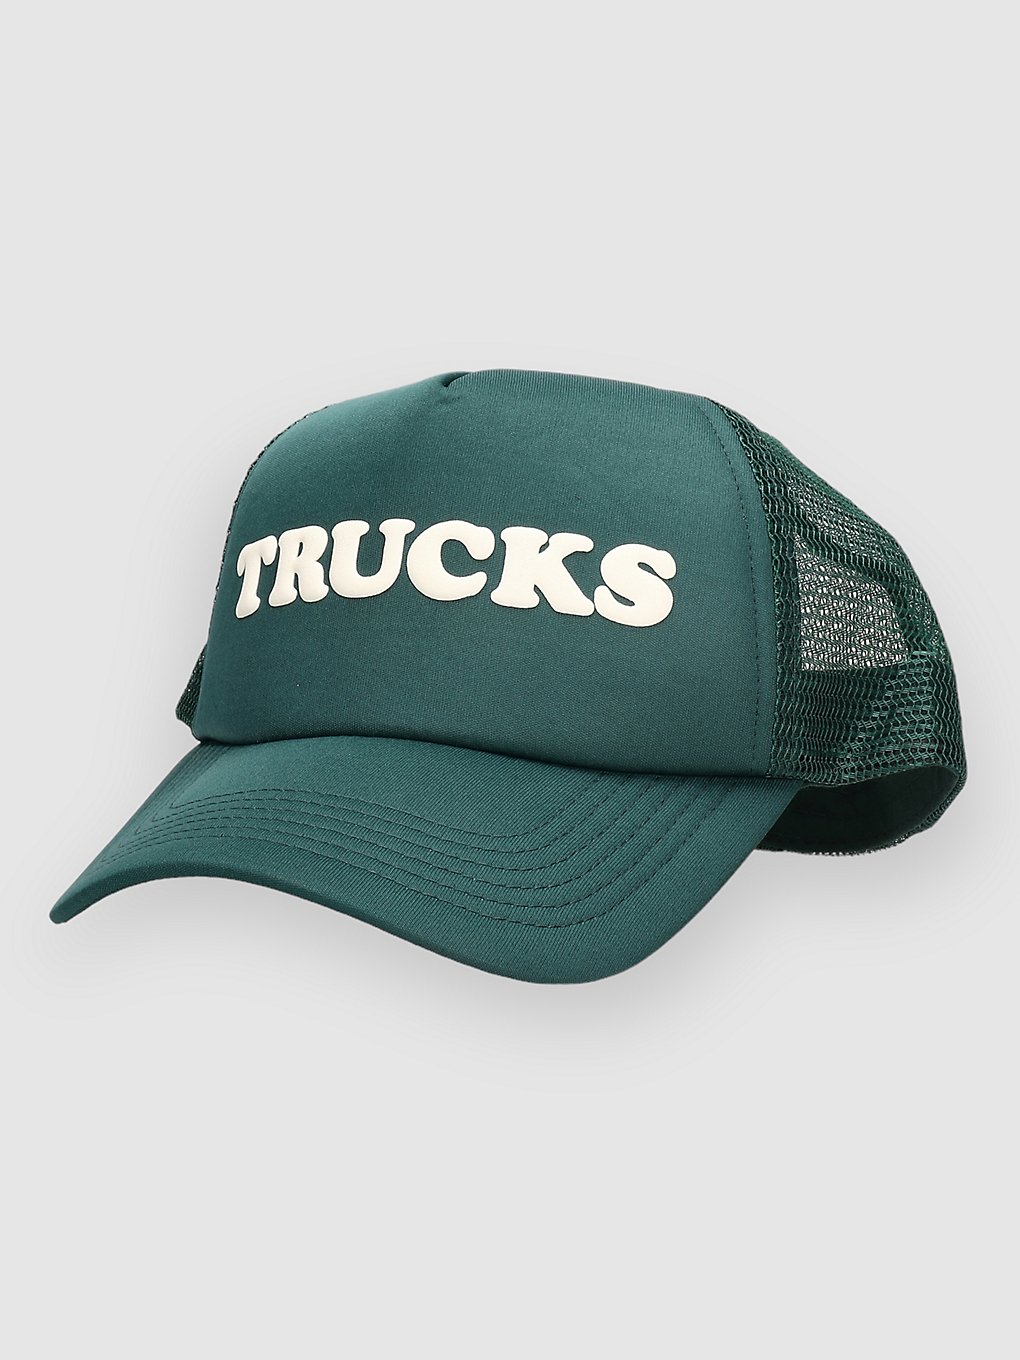 Donut Trucks Trucker petje groen